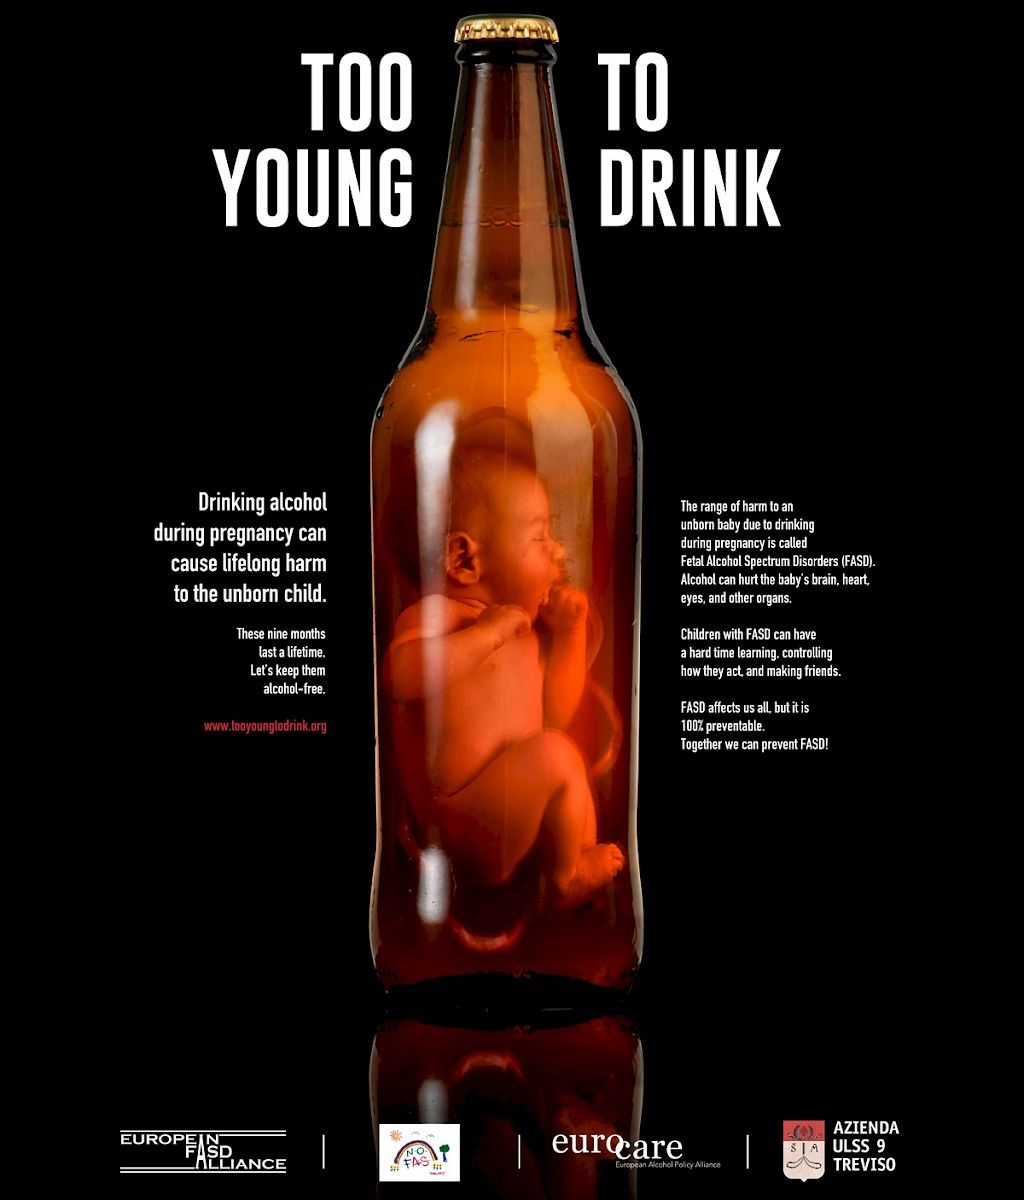 FASD-päivä muistuttaa raskaudenaikaisen alkoholinkäytön vaaroista